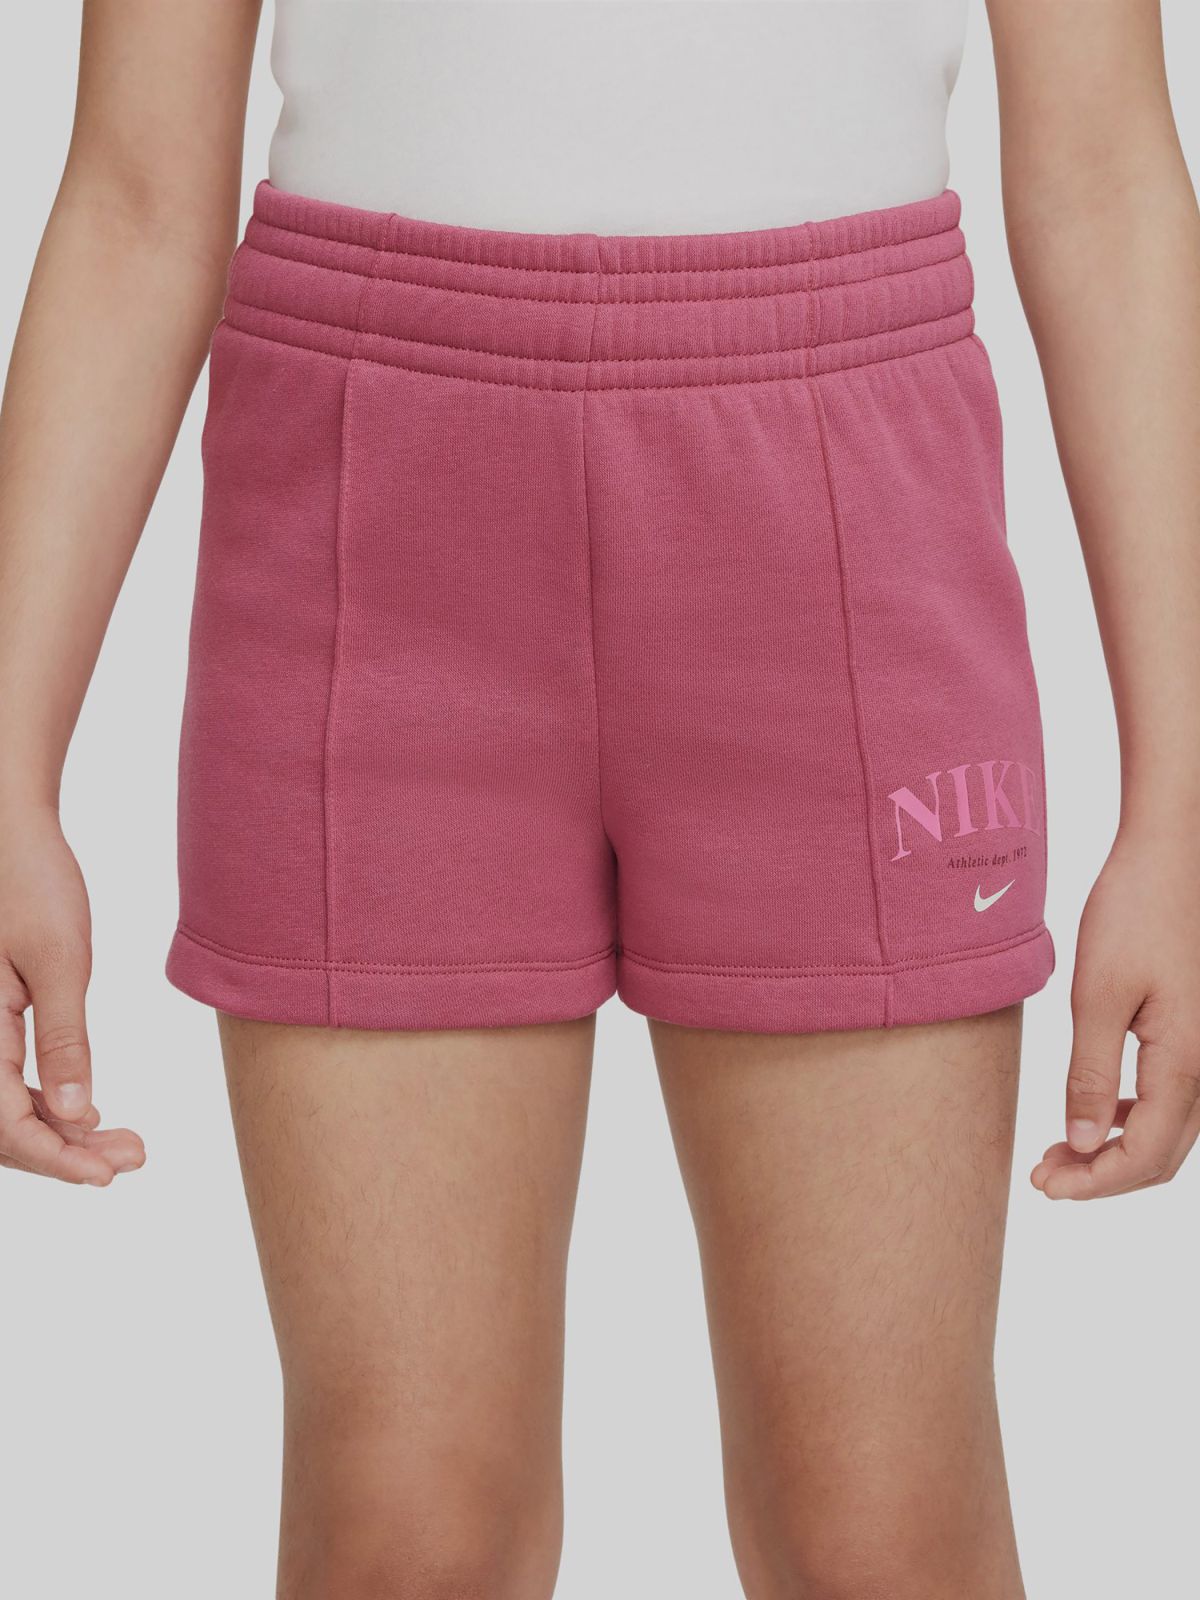  מכנסי טרנינג קצרים עם הדפס לוגו של NIKE